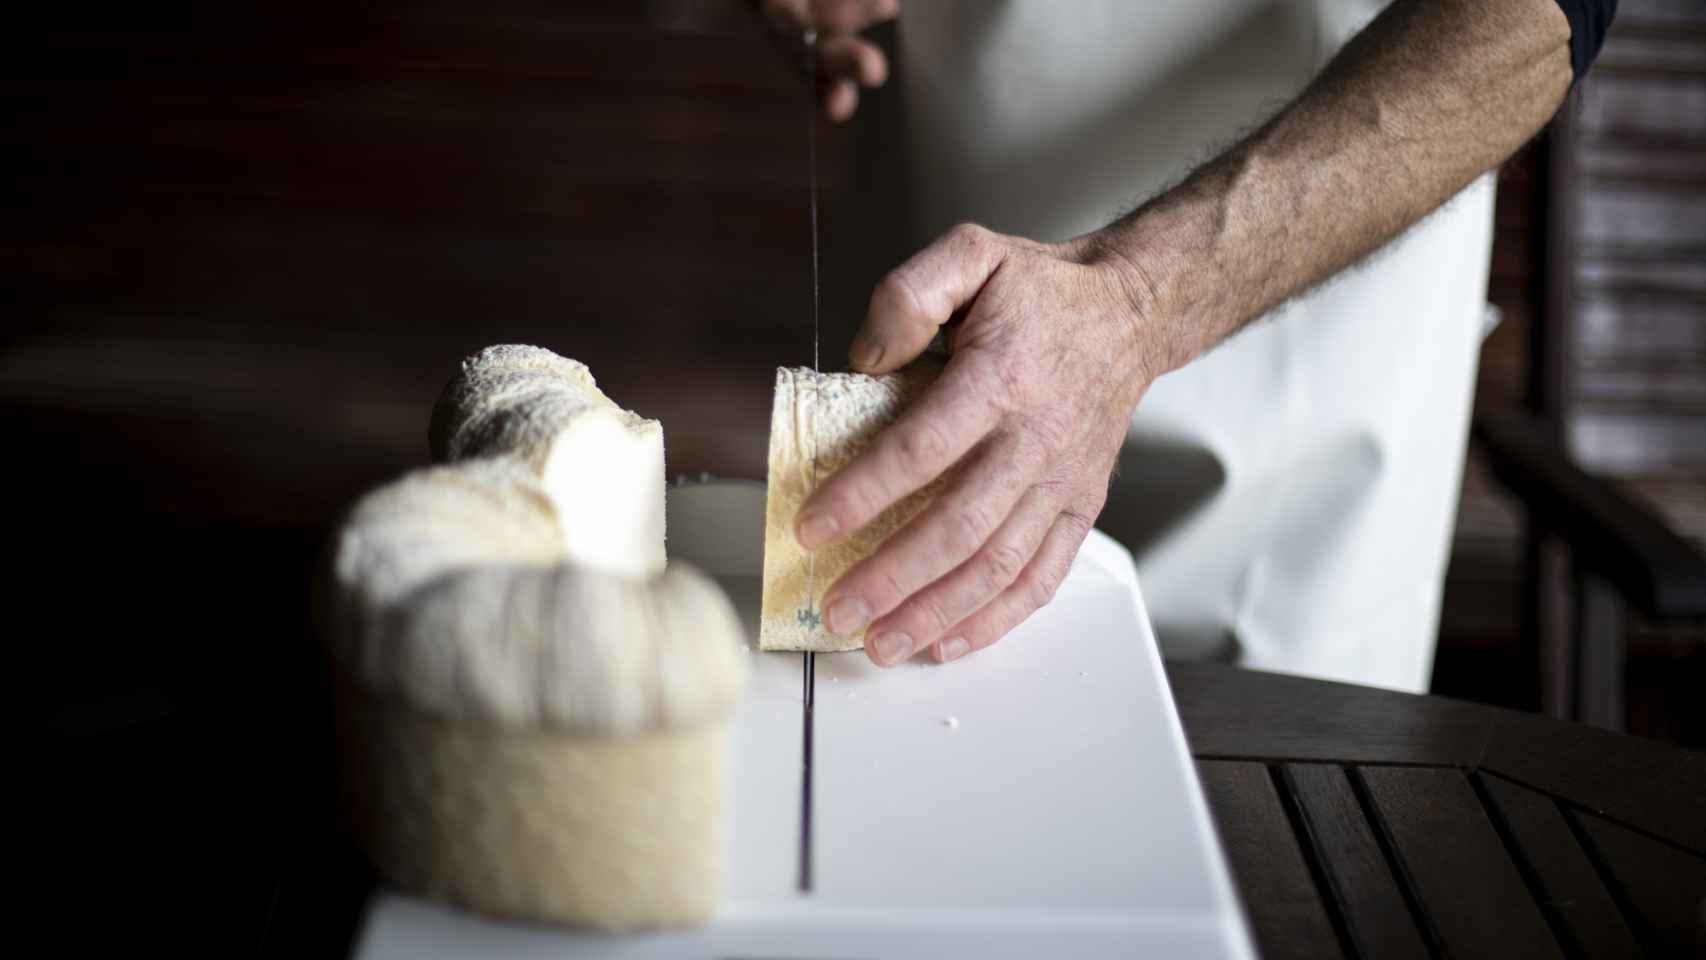 El maestro quesero Carlos corta uno de sus quesos D.O.P.  Cebreiro madurados.